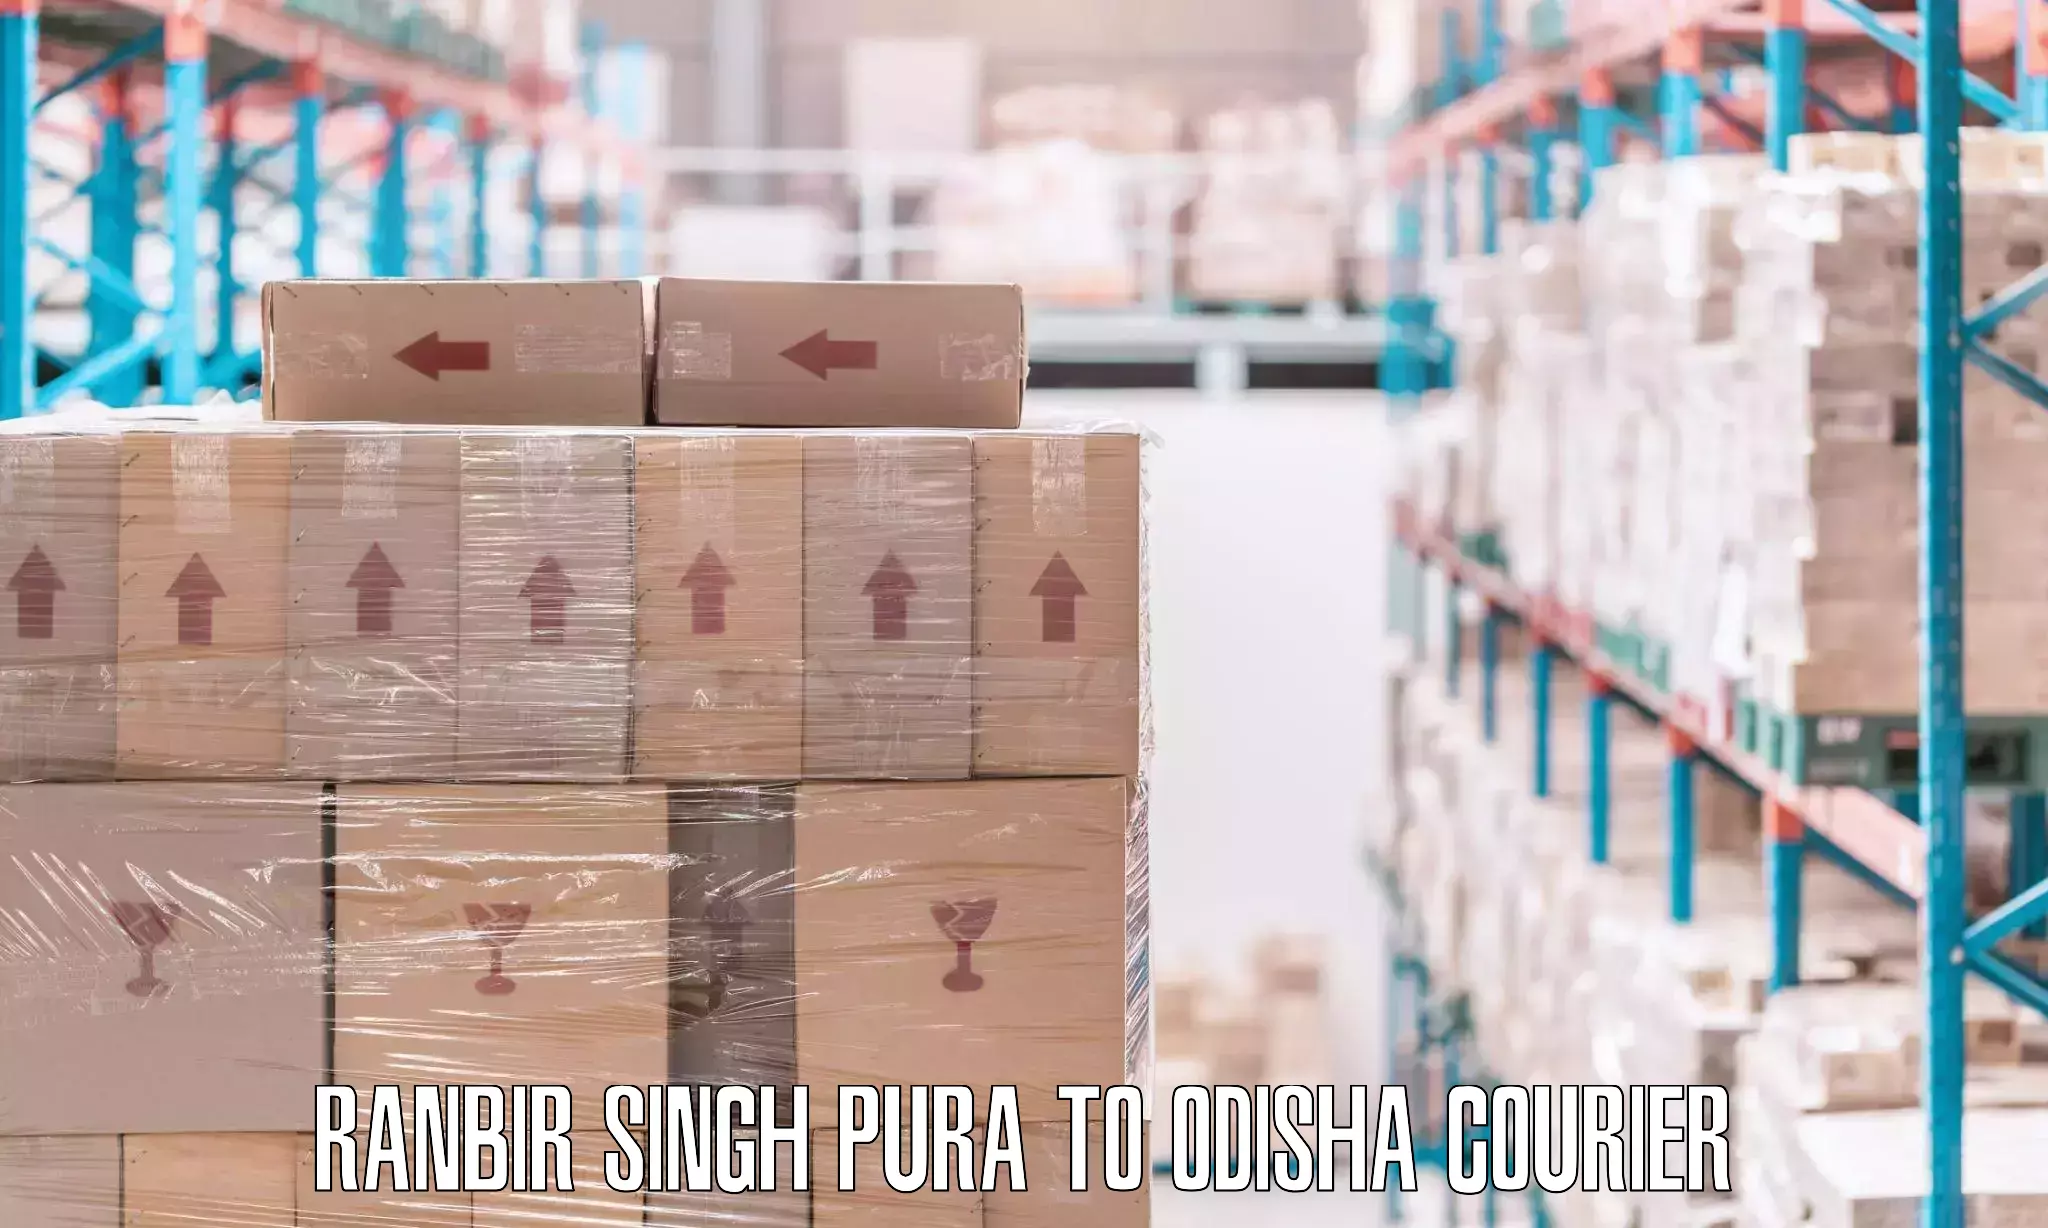 Furniture transport professionals Ranbir Singh Pura to Gunupur